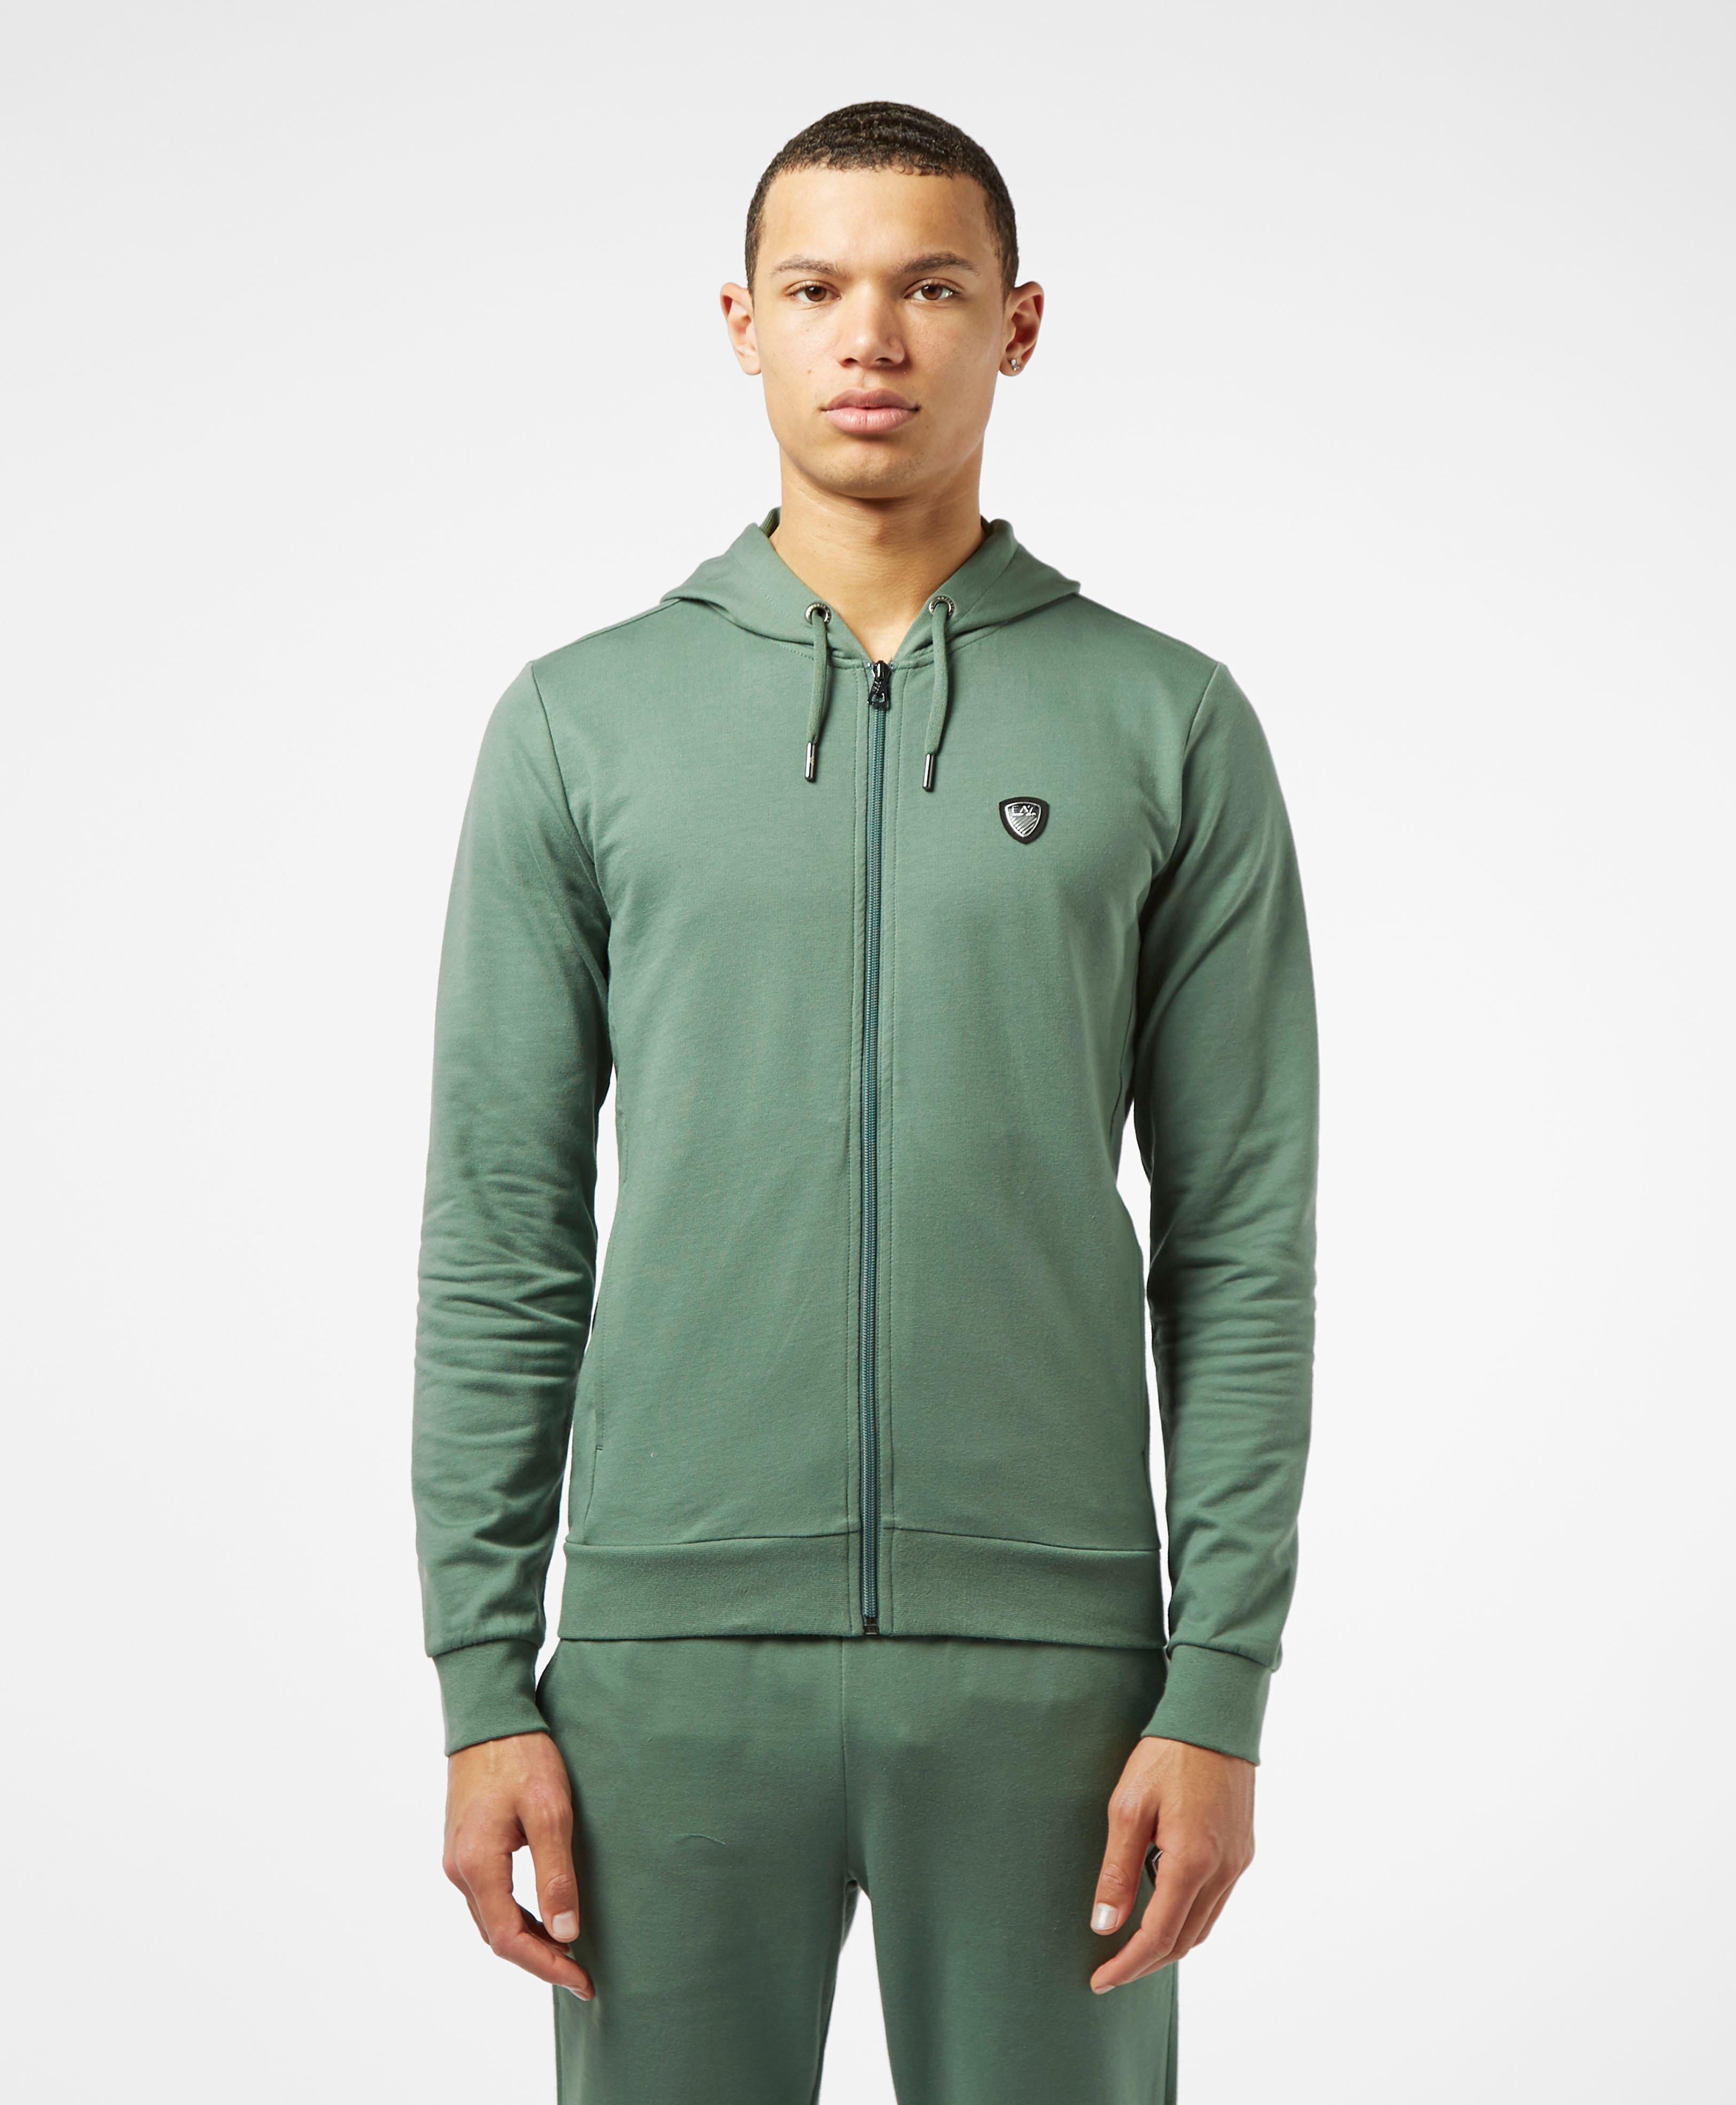 green ea7 hoodie